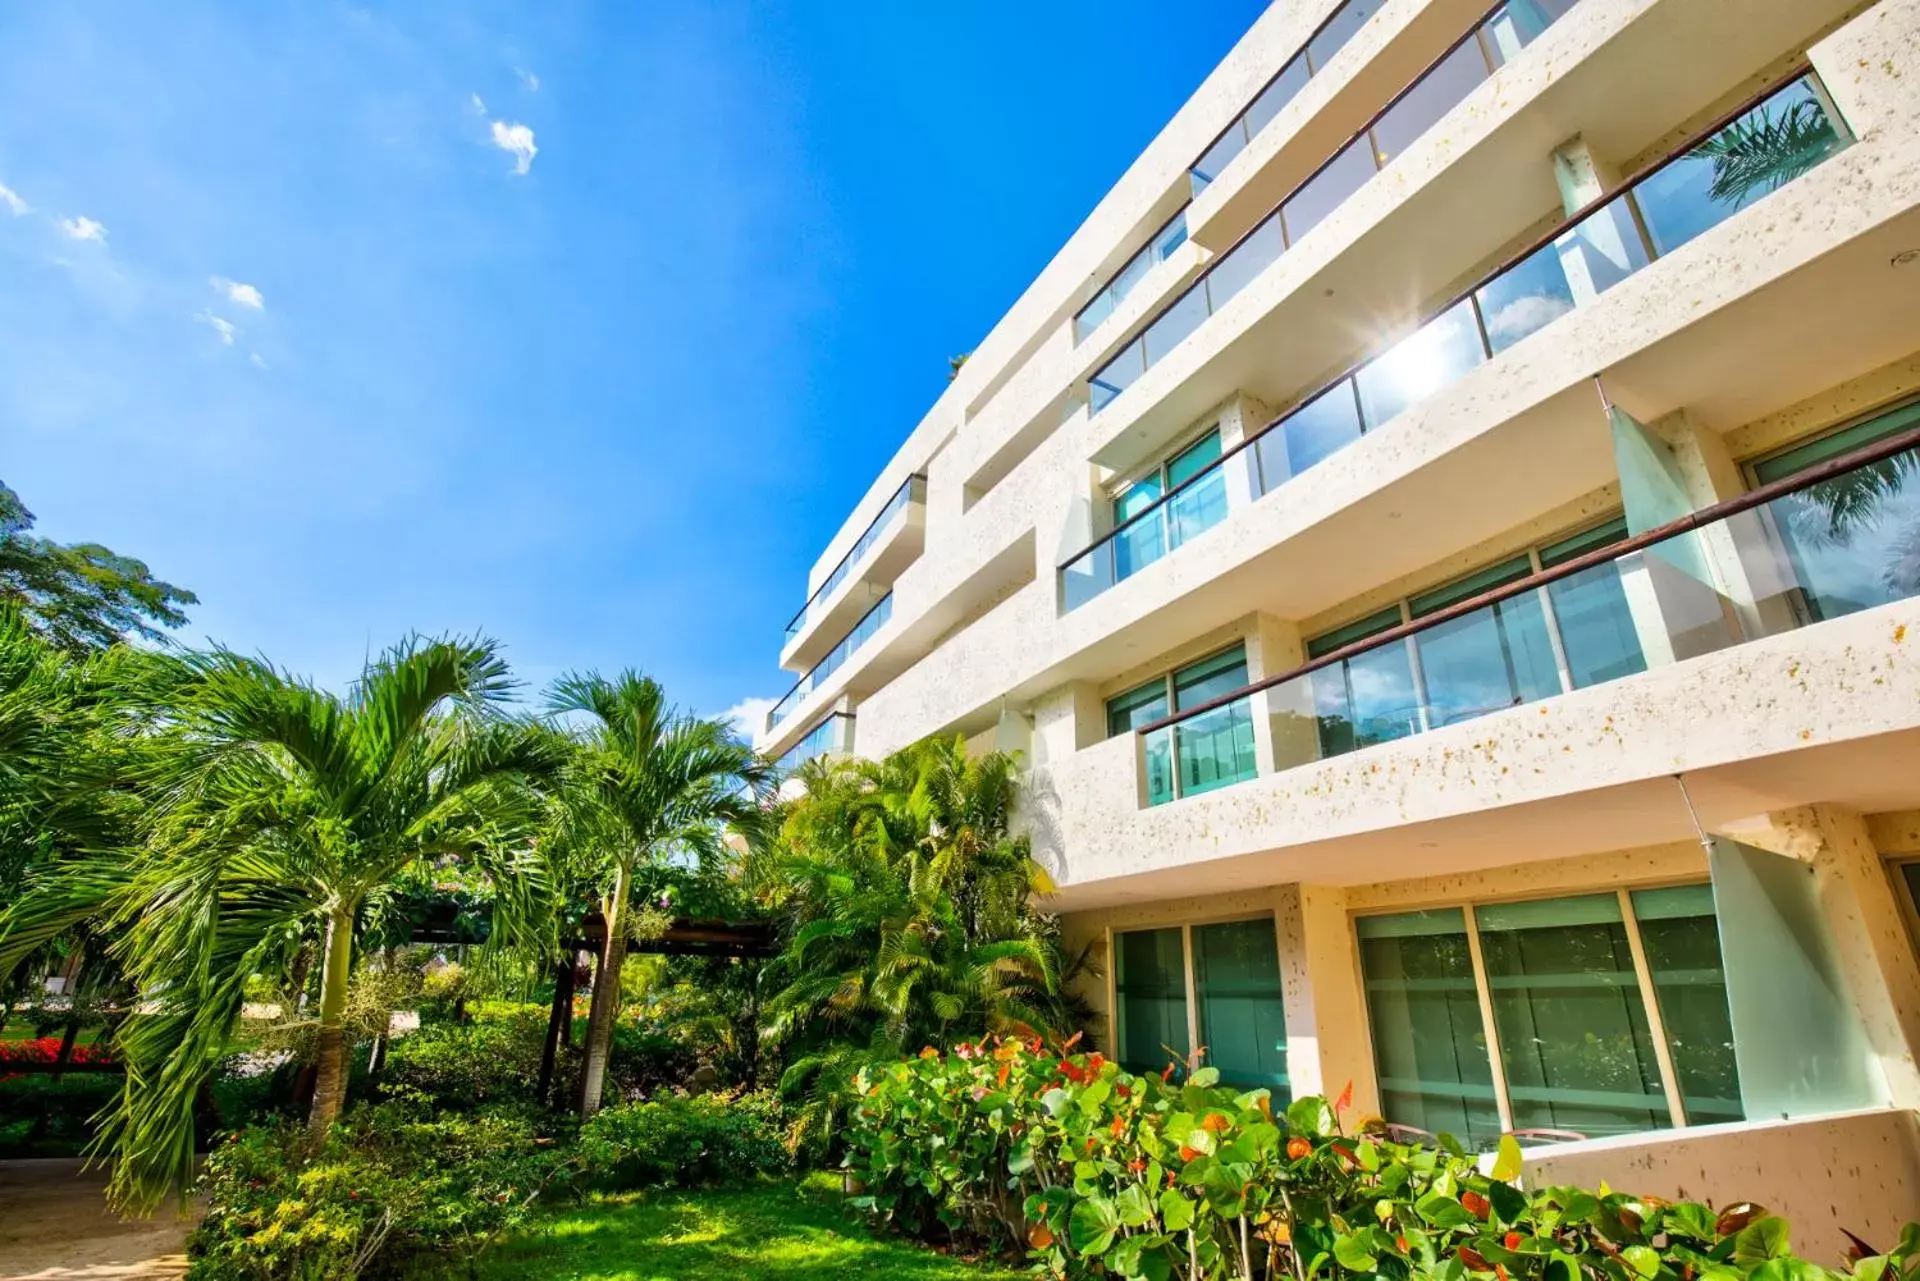 Area and facilities, Property Building in Estelar Playa Manzanillo - All inclusive